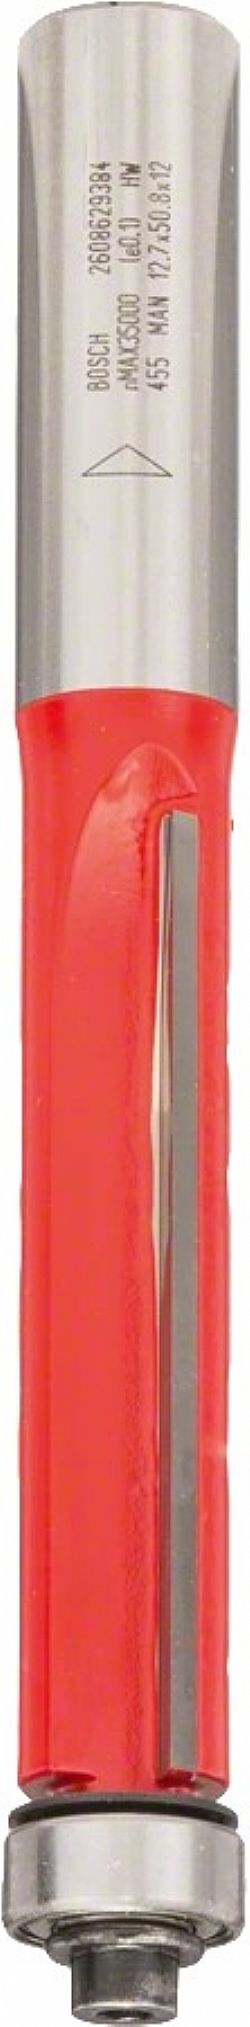 Κοπτικό Ρούτερ Φρέζα Κουρέματος με Ρουλεμάν οδηγό 12mm (D)12.7mm/(L)50,8mm κάτω Δίκοπη Σκληρομέταλλο BOSCH